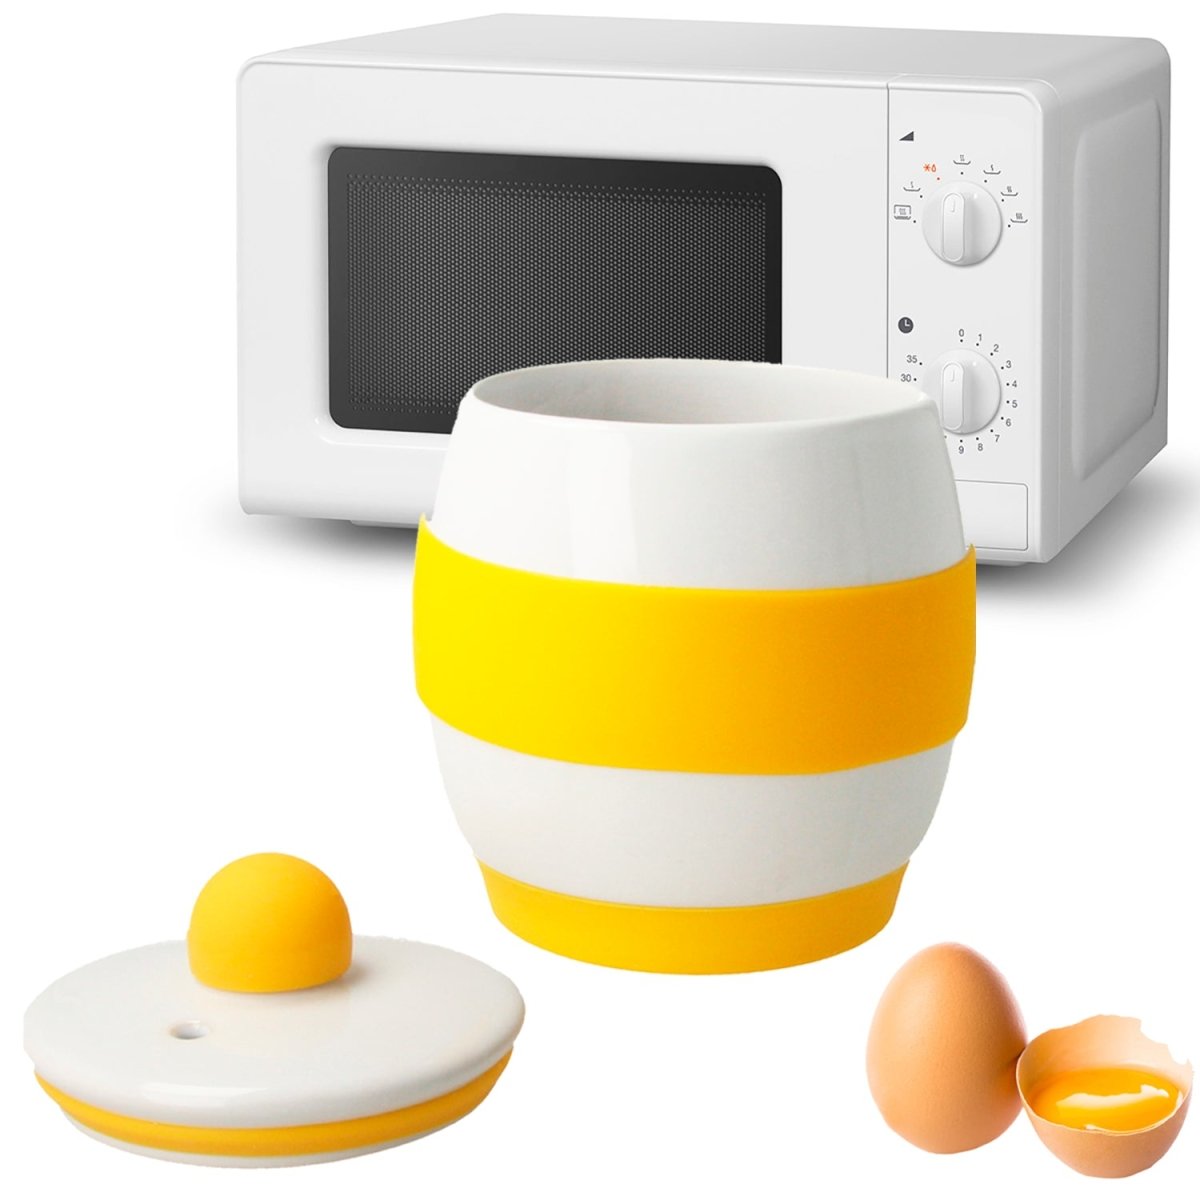 Cuece Huevos microondas cerámica - Egg Poacher - Estuche Vapor Huevos microondas - Blanco - movilcom.com